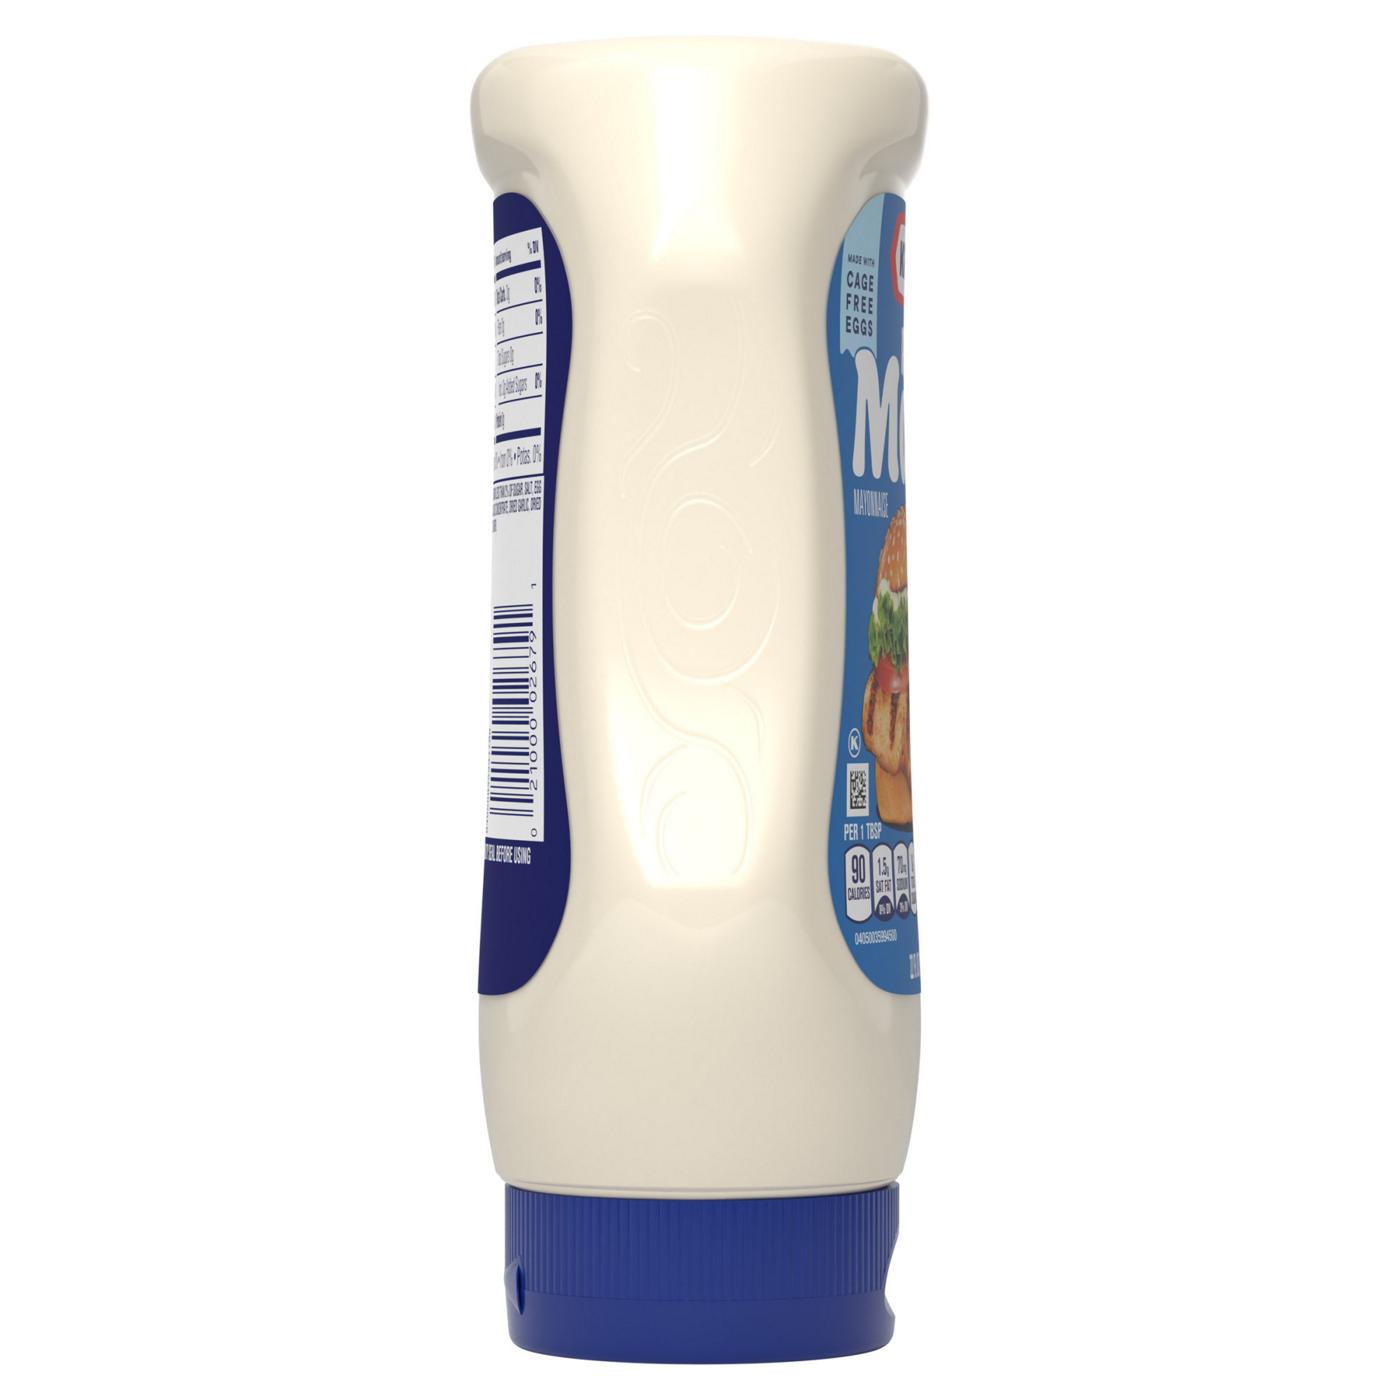 Kraft Mayo Real Mayonnaise Squeeze Bottle; image 9 of 9